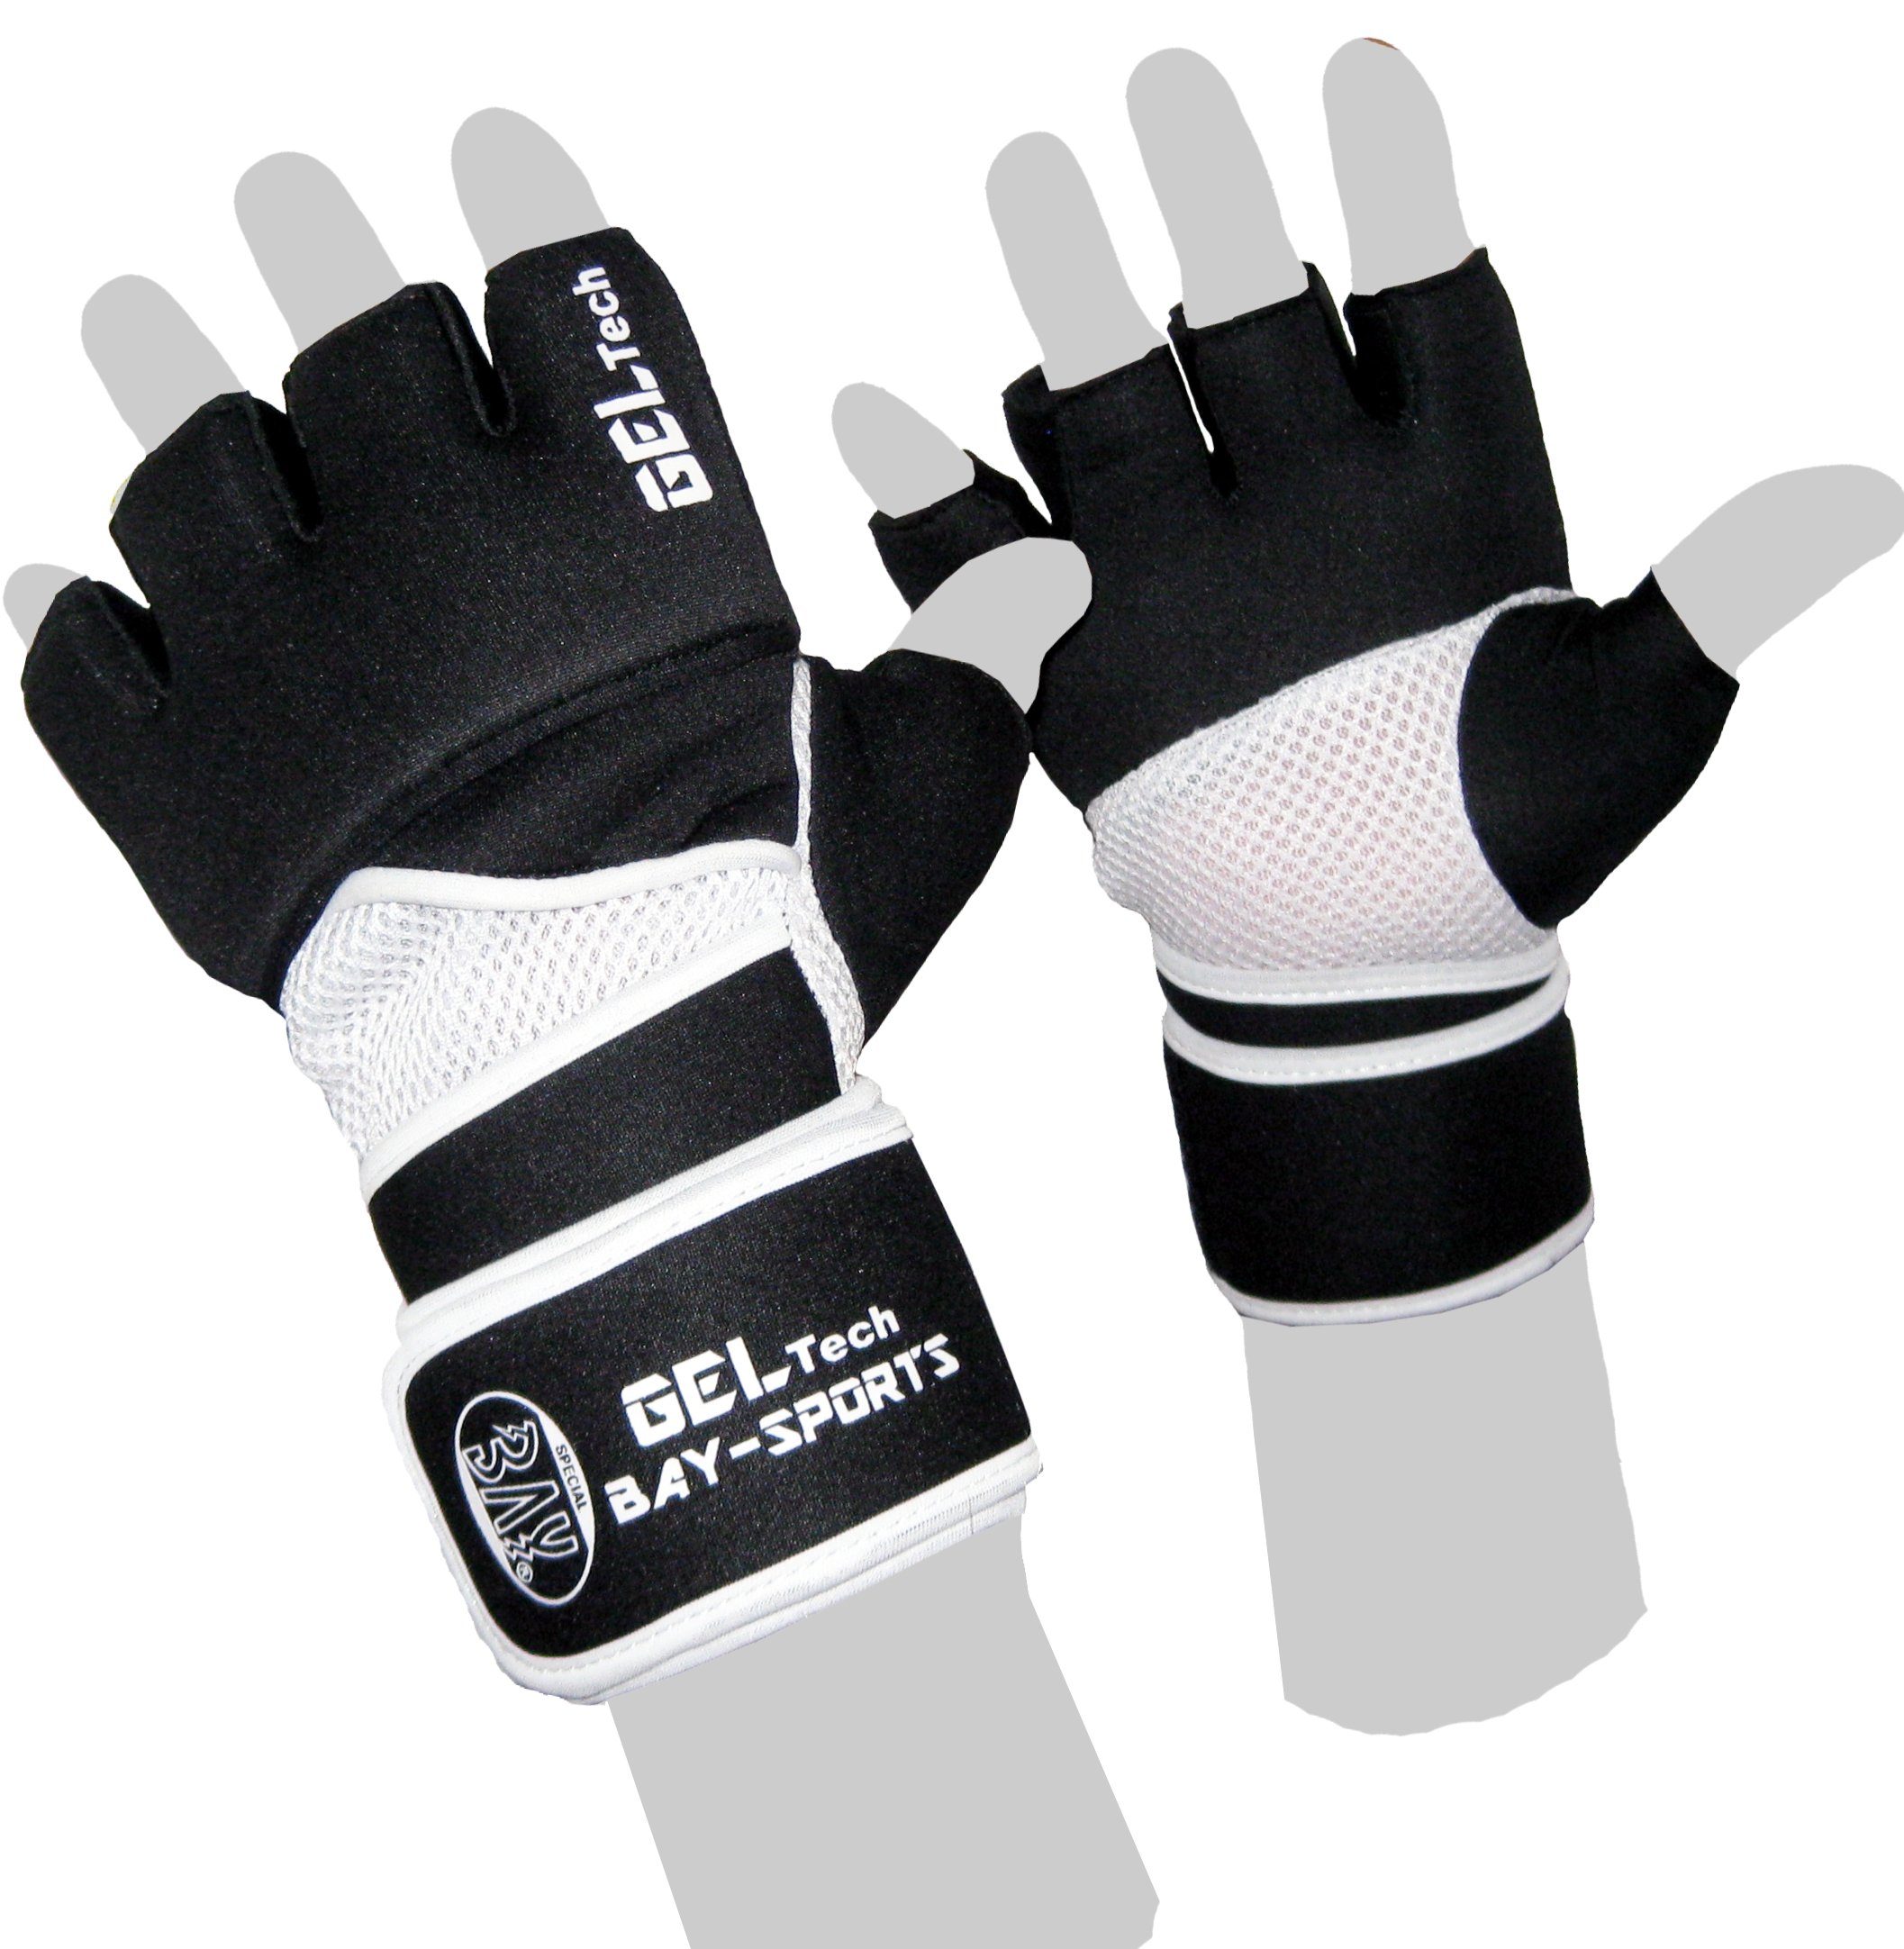 Boxsack und Winsome XL BAY-Sports Handschutz Erwachsene Sandsack, Handschuhe XS Kinder Neopren Boxhandschuhe -